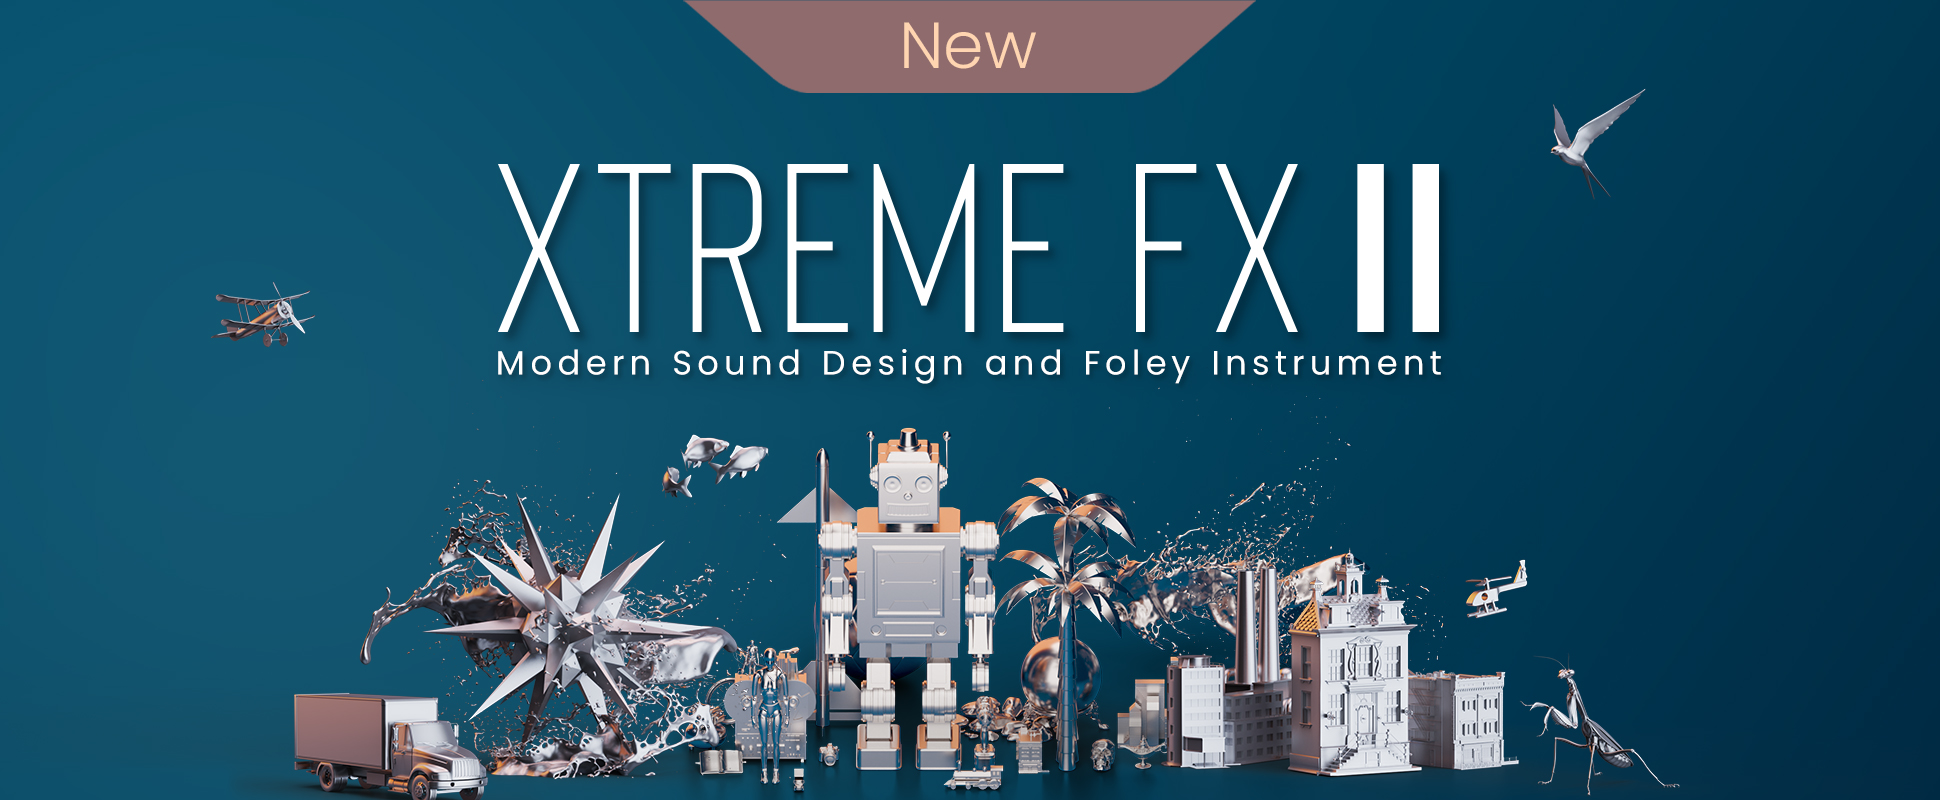 Xtreme FX 2 - New